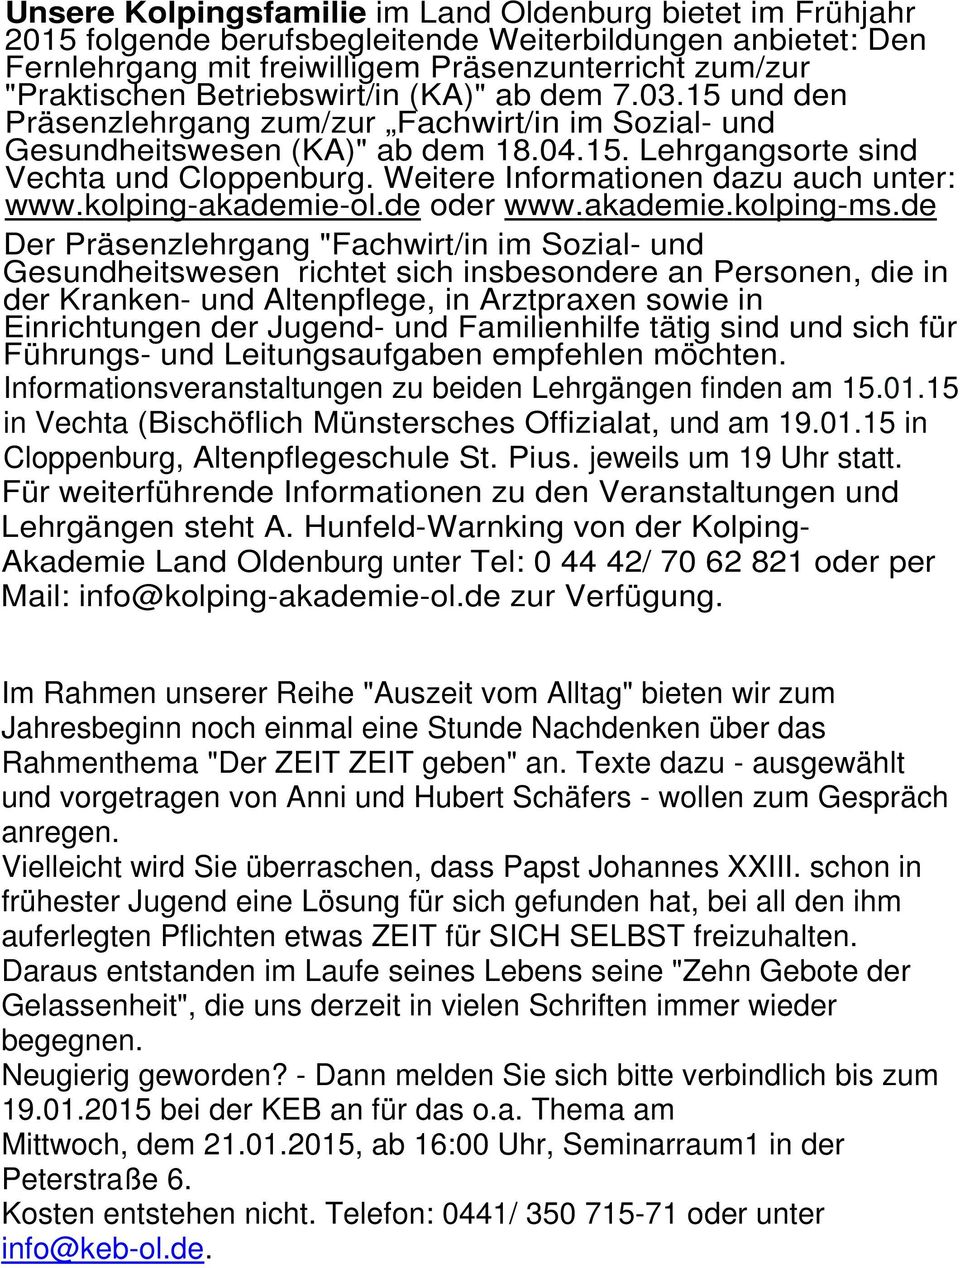 Weitere Informationen dazu auch unter: www.kolping-akademie-ol.de oder www.akademie.kolping-ms.